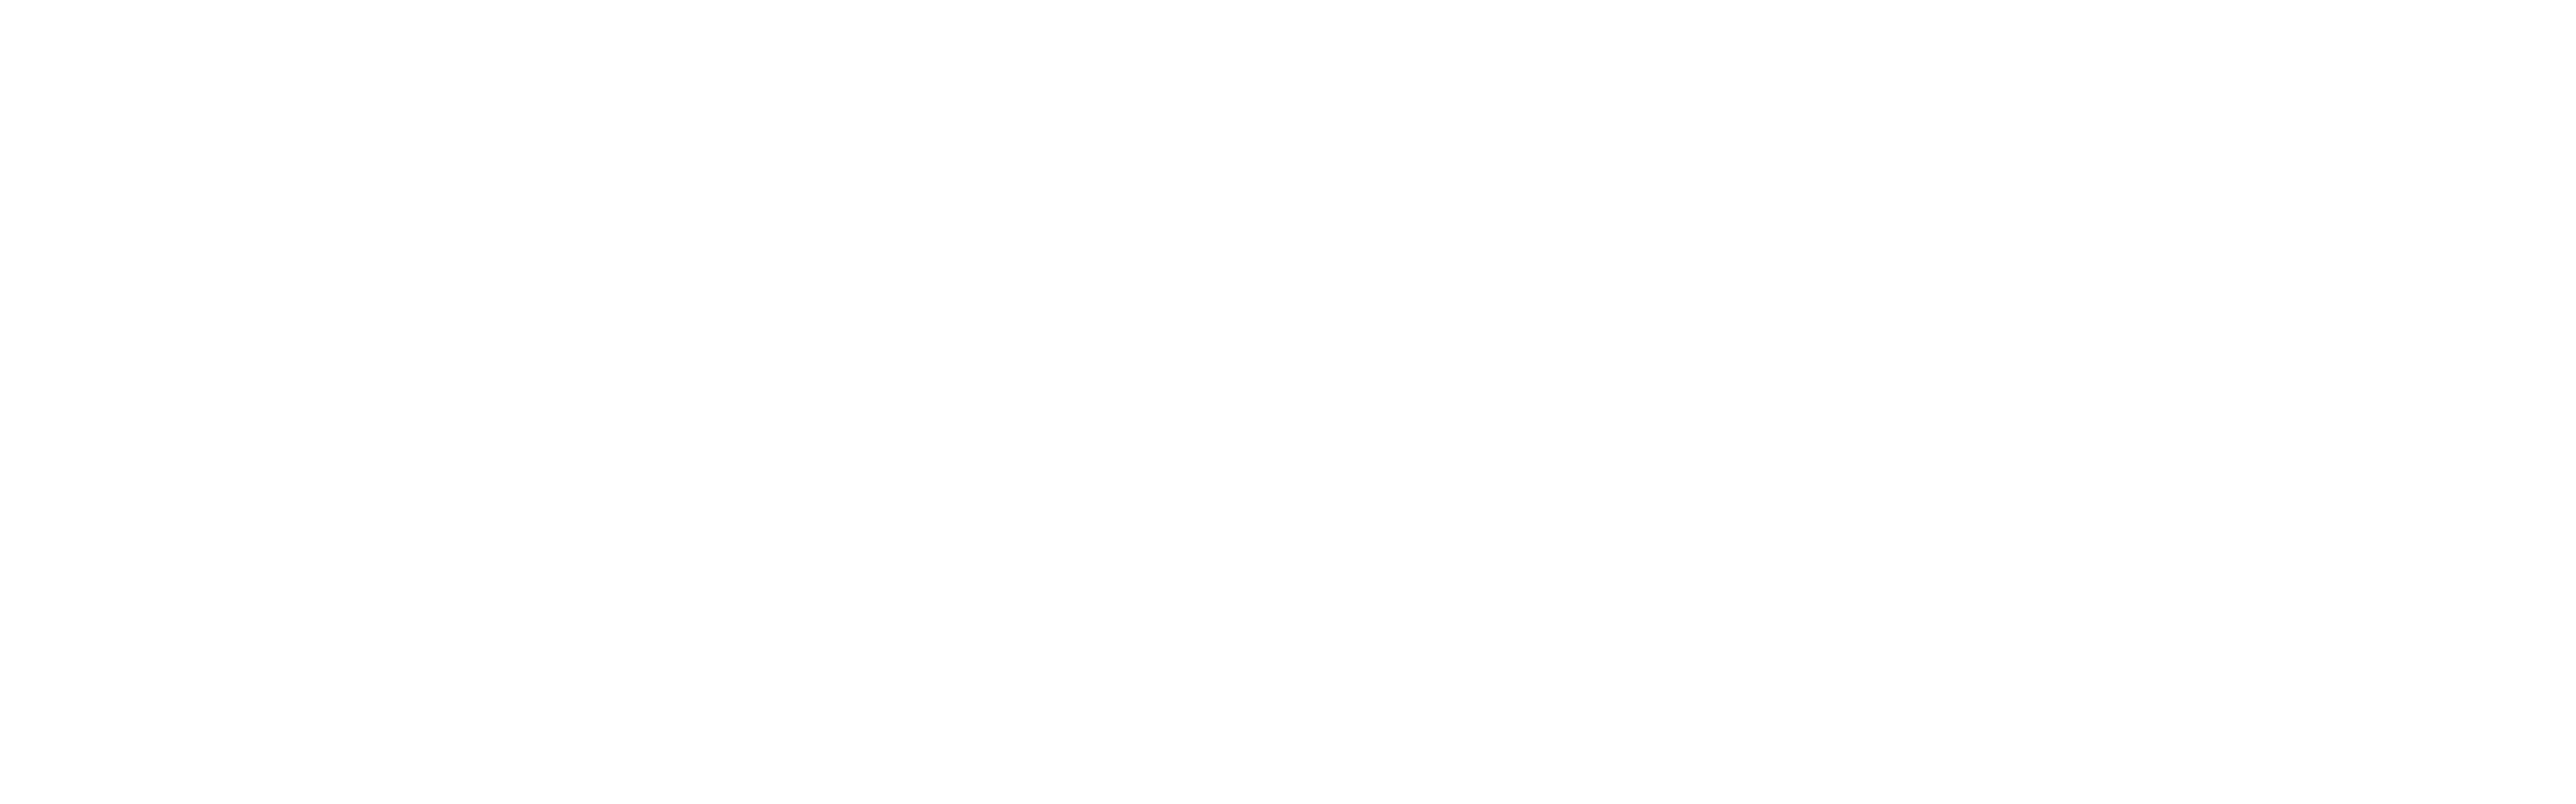 Lagom Milano